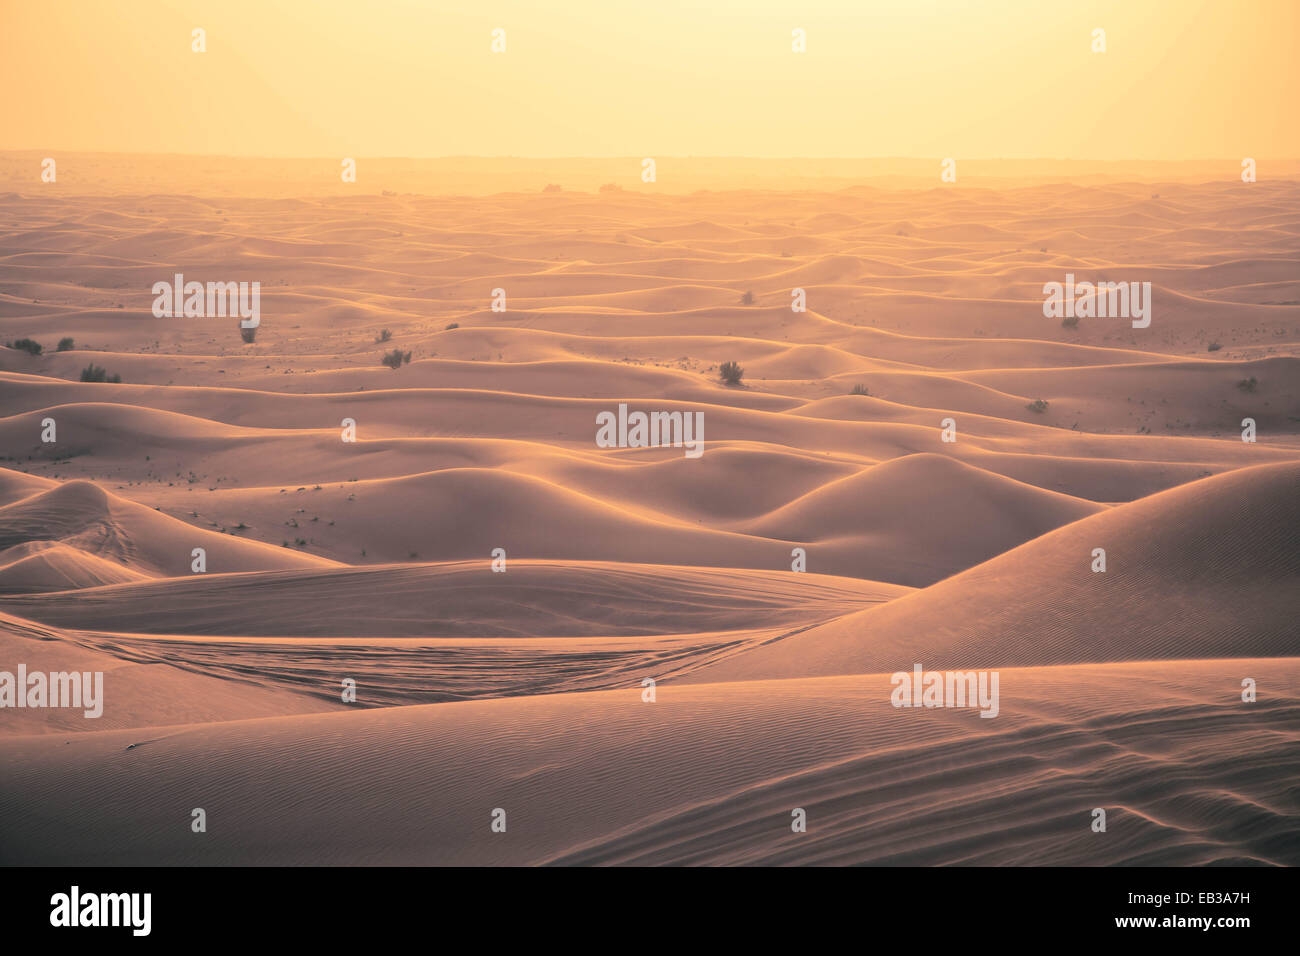 Dunes de sable dans le désert au coucher du soleil, Dubaï Banque D'Images